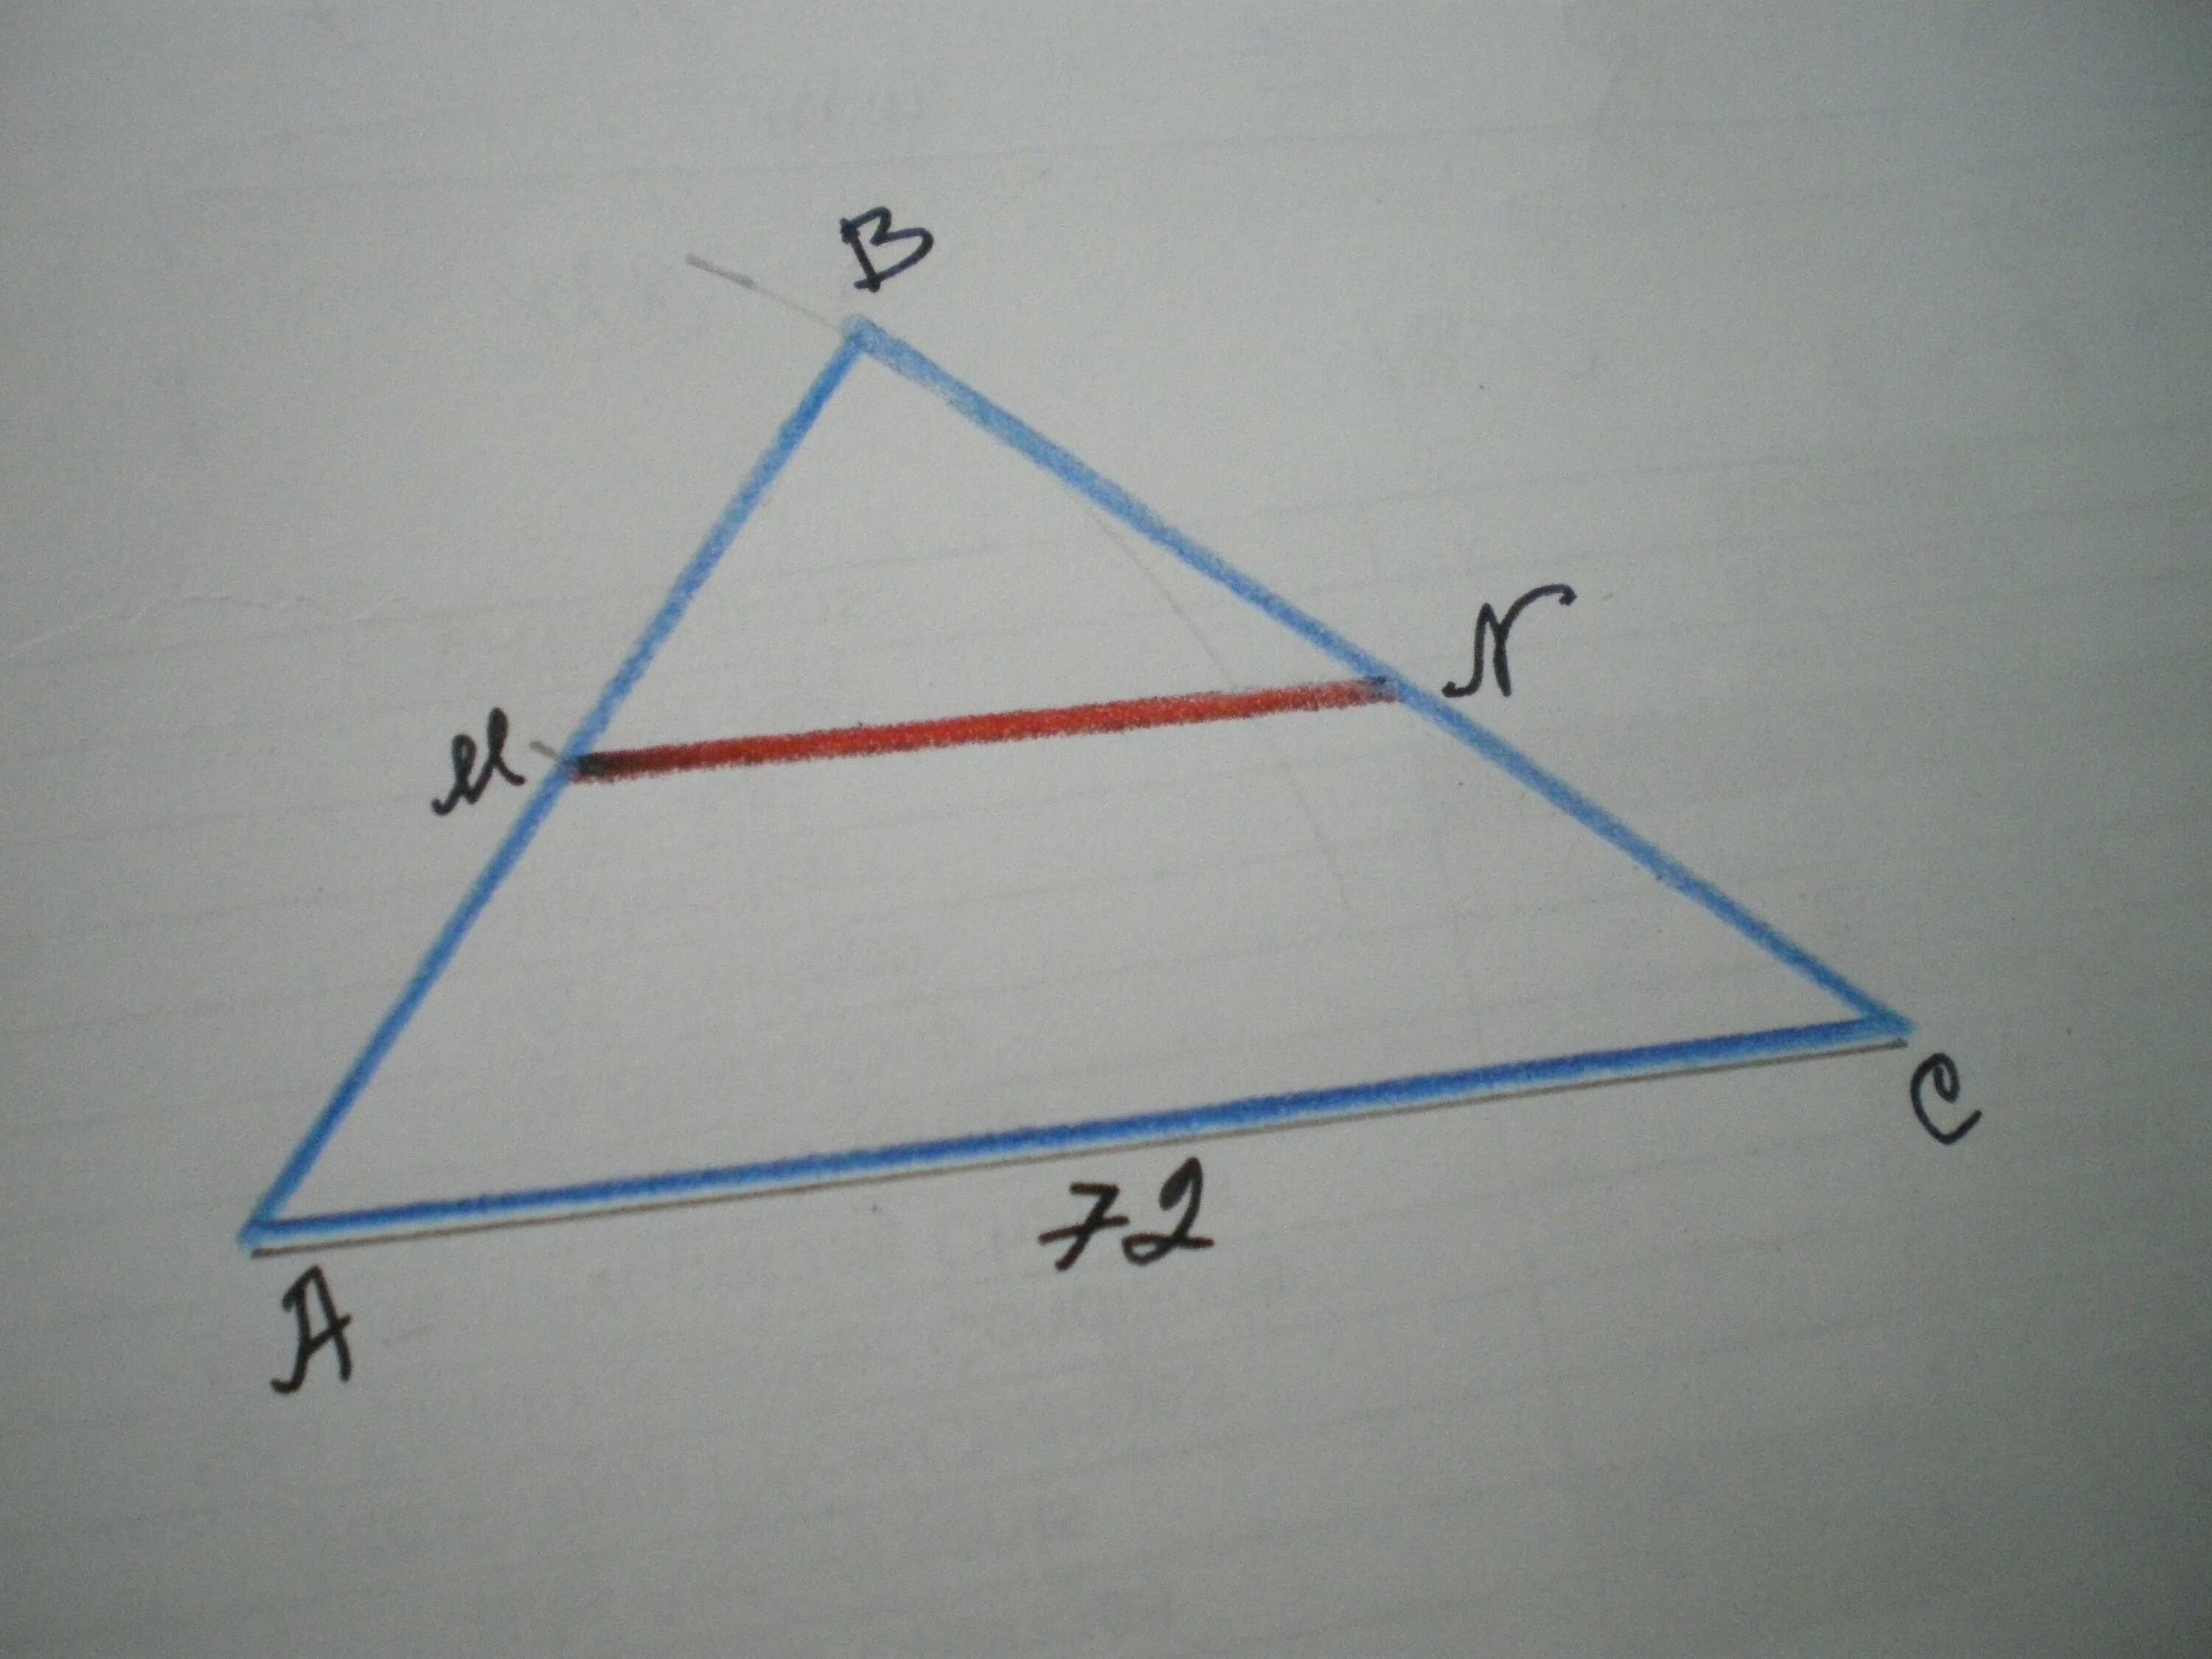 Середина стороны треугольника является точка. Точки m и n являются серединами сторон ab и BC треугольника ABC сторона. Точки m и n являются серединами сторон ab. Точки m и n являются серединами сторон ab и BC треугольника ABC сторона ab. Точки m и n середины сторон треугольника.